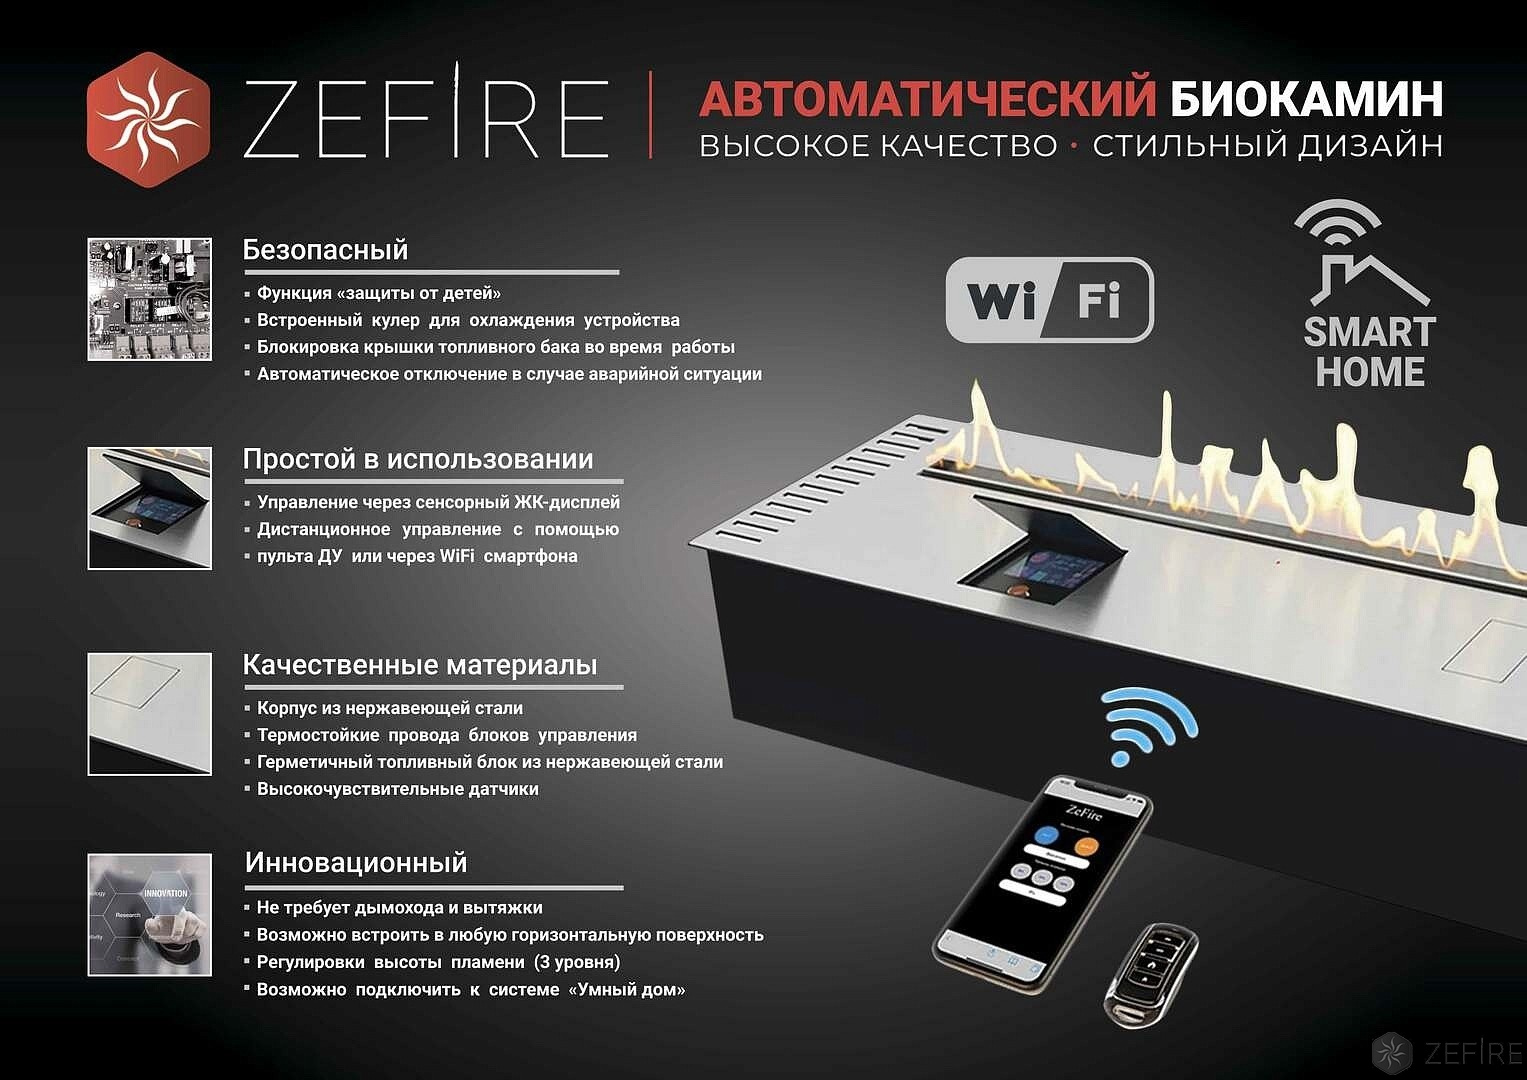 Автоматический биокамин ZeFire Automatic 1600 с ДУ